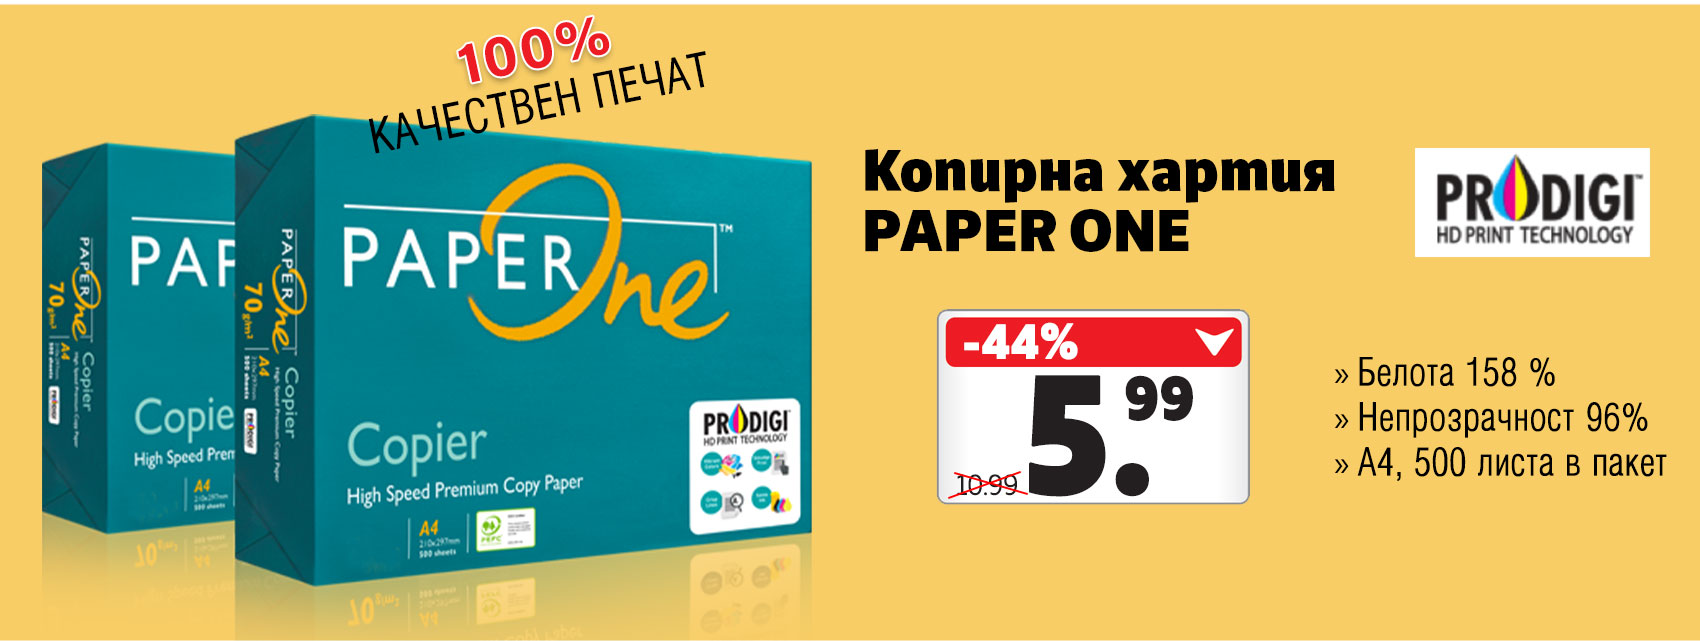 Качествена копирна хартия Paper One само за 5.99 лв. за пакет без ДДС